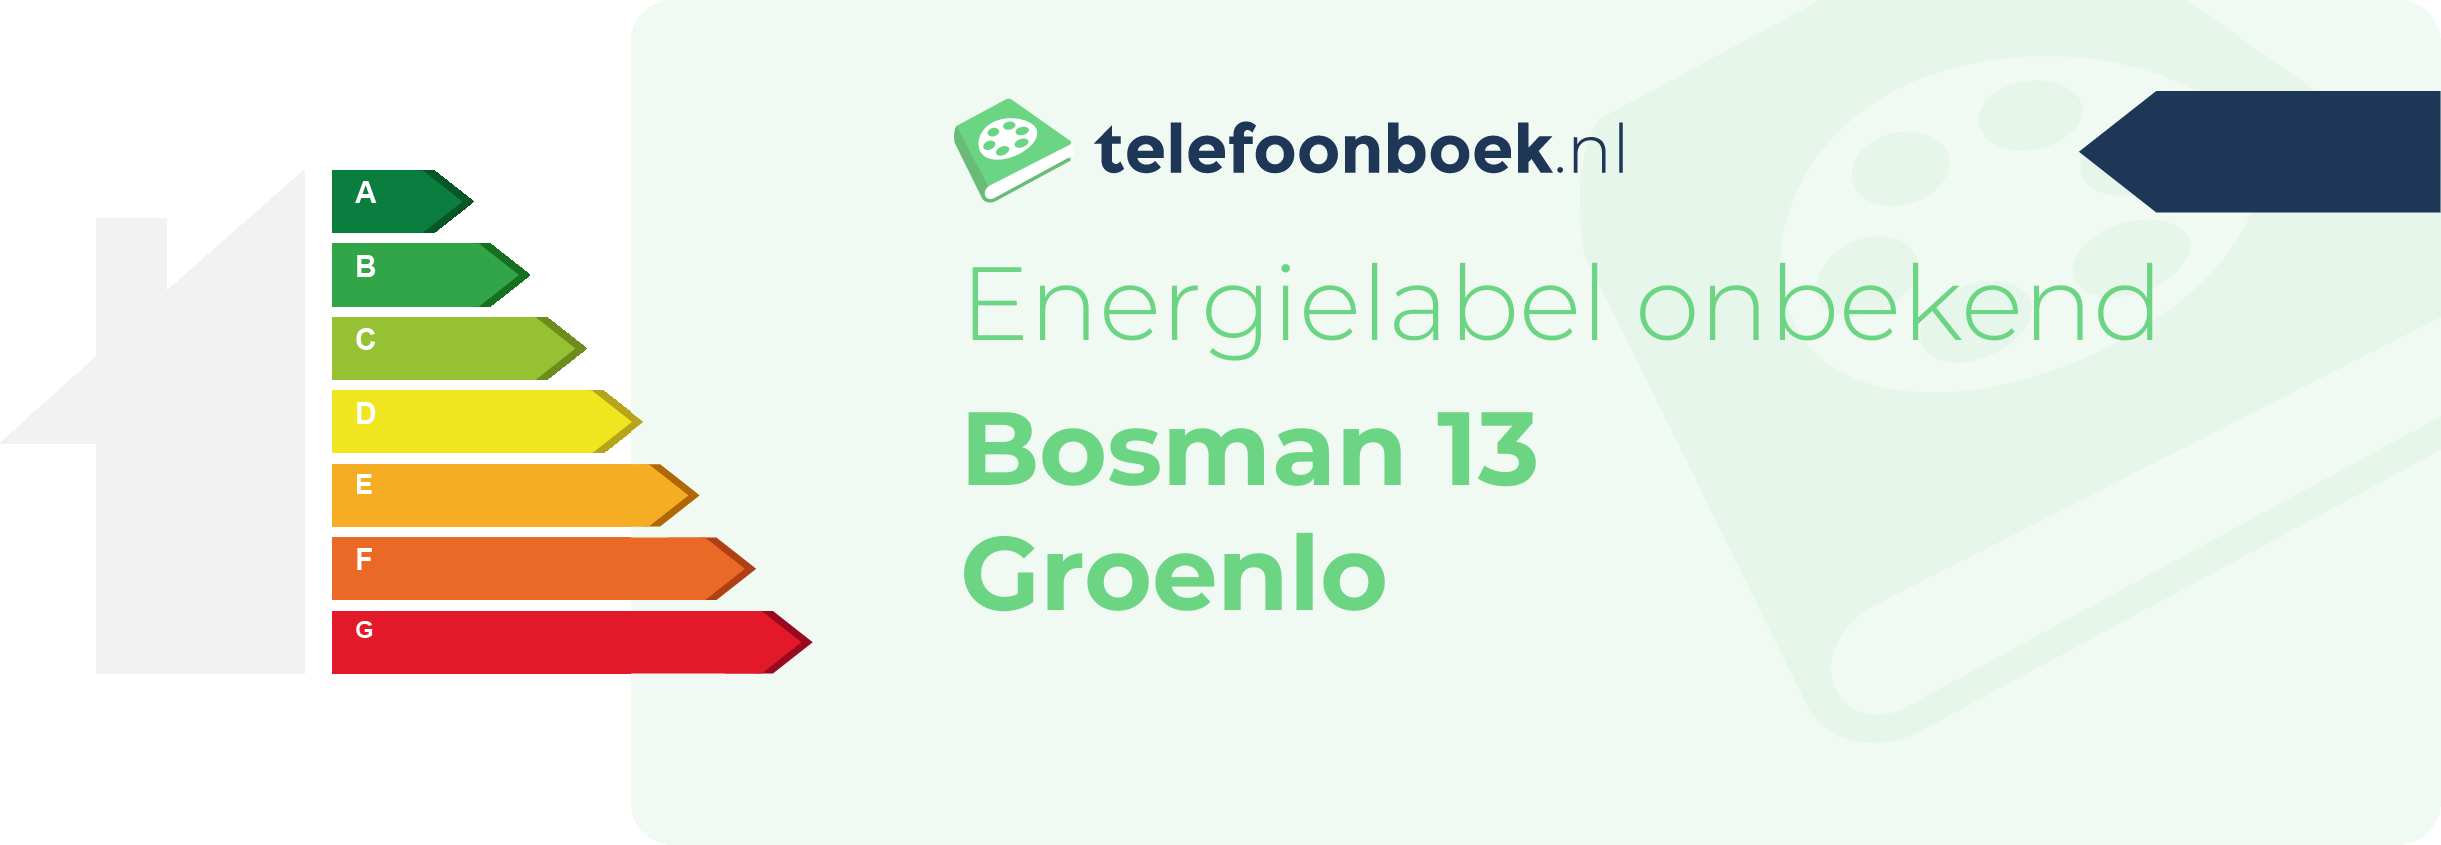 Energielabel Bosman 13 Groenlo